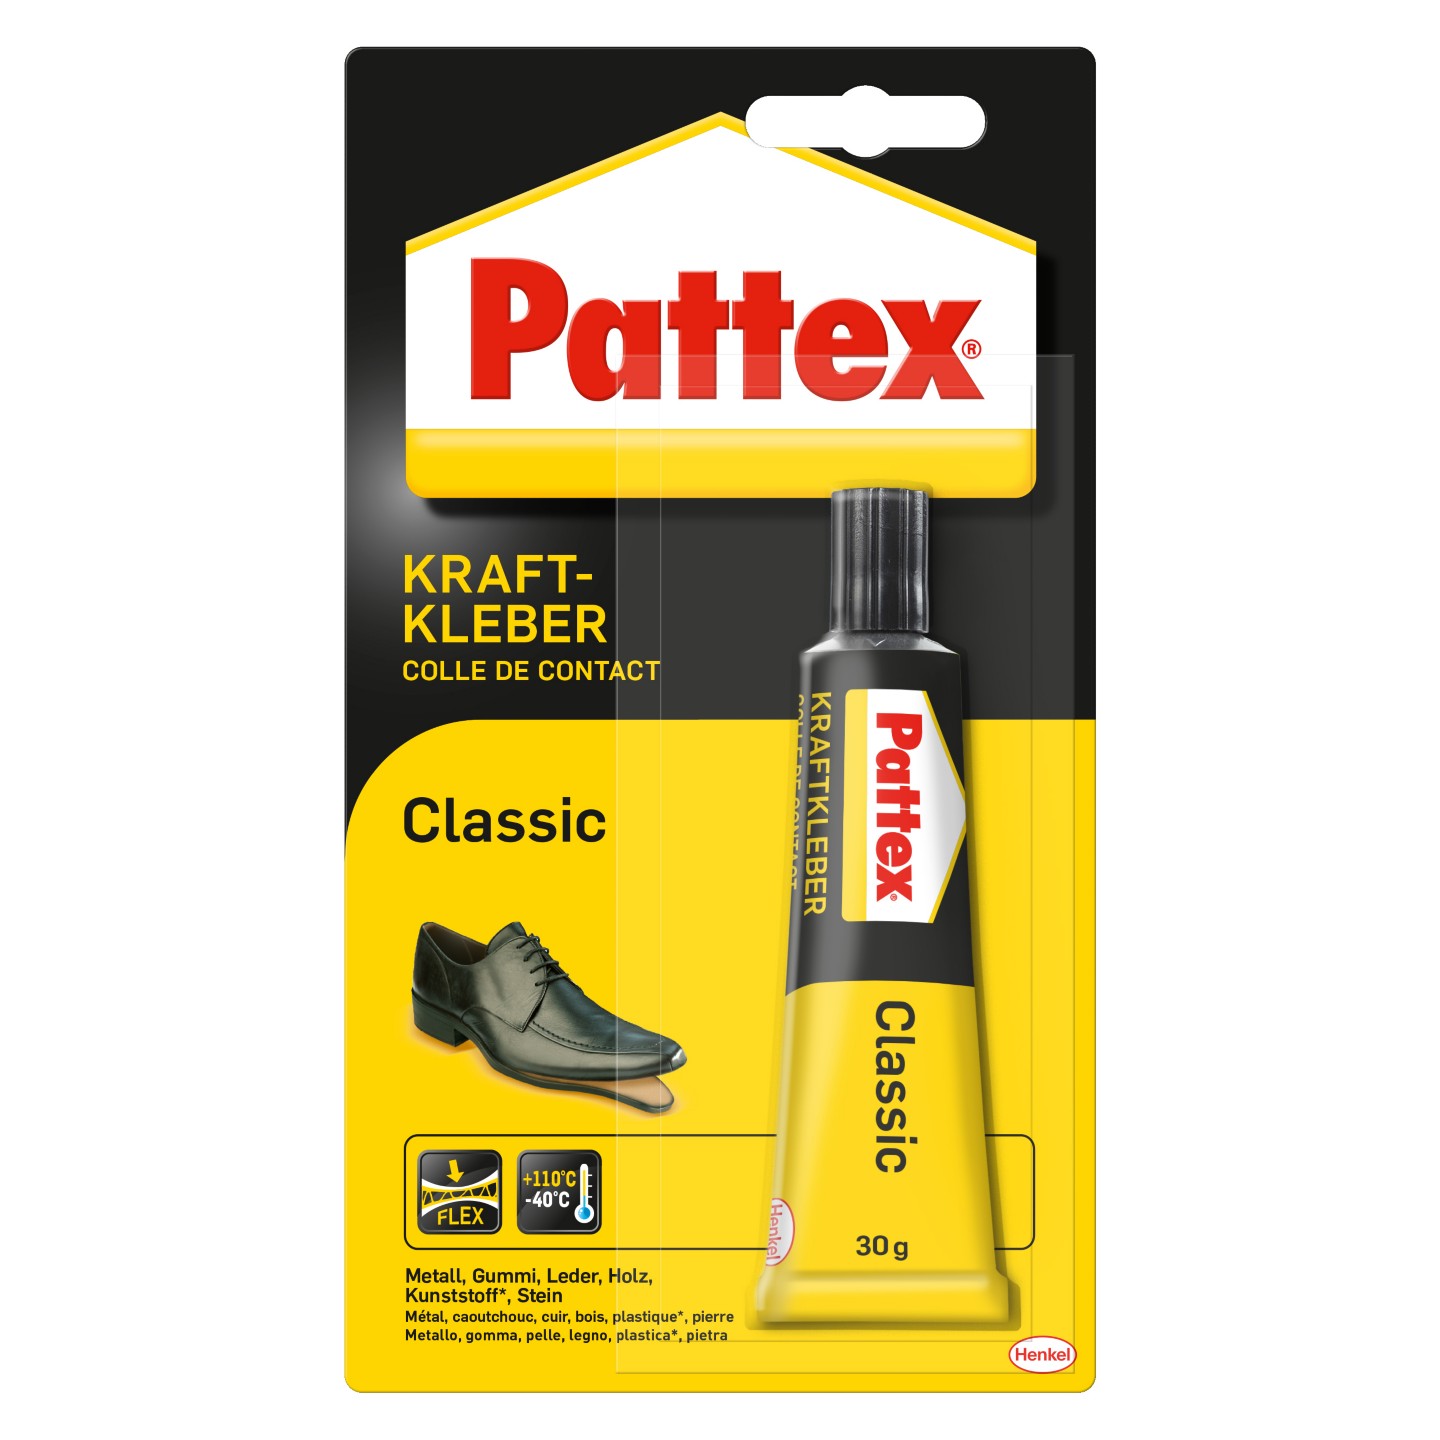 Pattex Kraftkleber Classic extrem starker Kleber für höchste Festigkeit Alle 